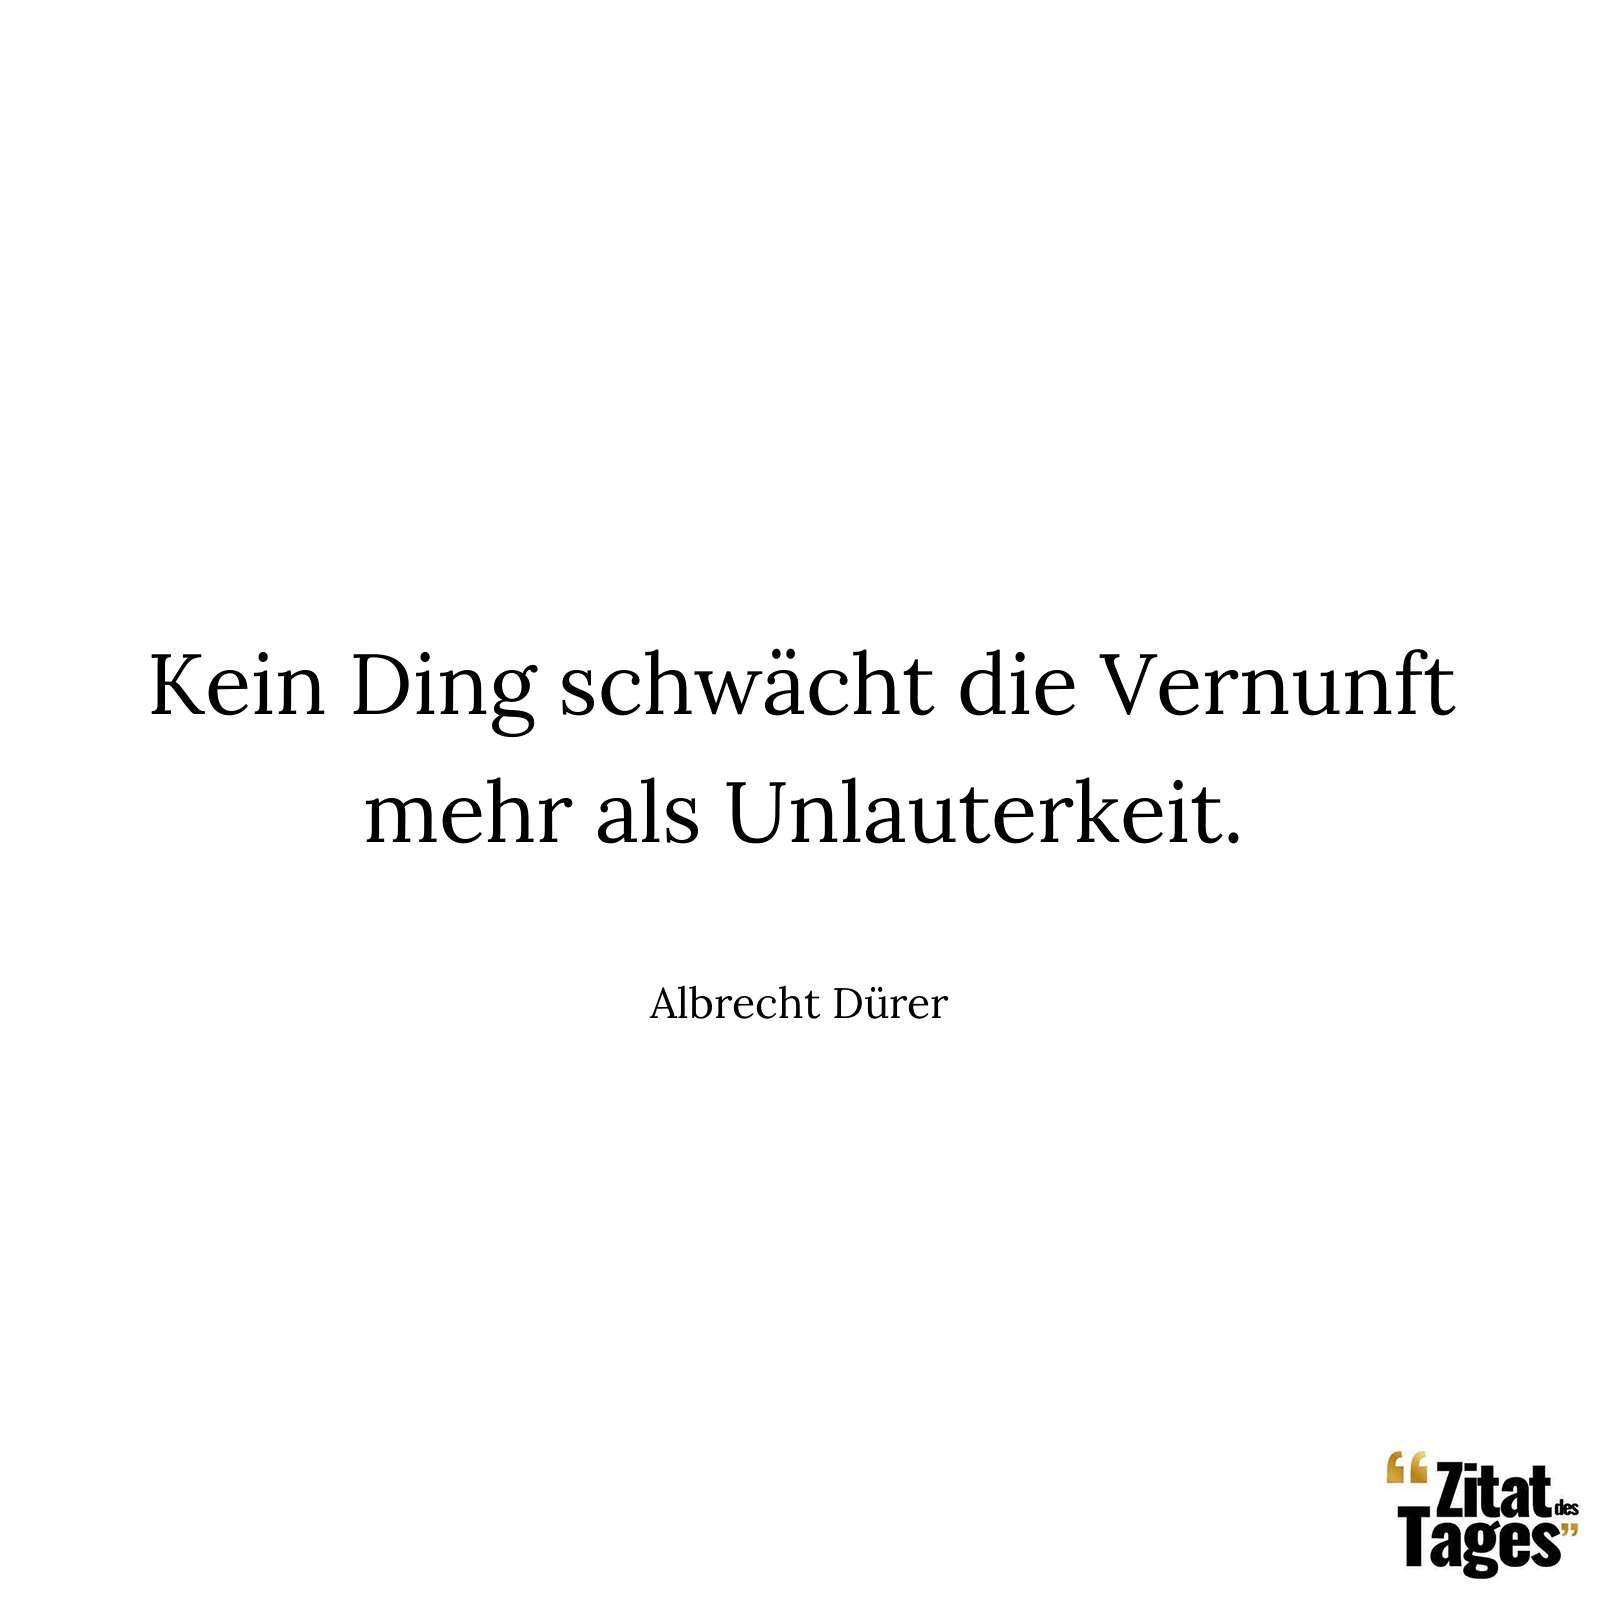 Kein Ding schwächt die Vernunft mehr als Unlauterkeit. - Albrecht Dürer